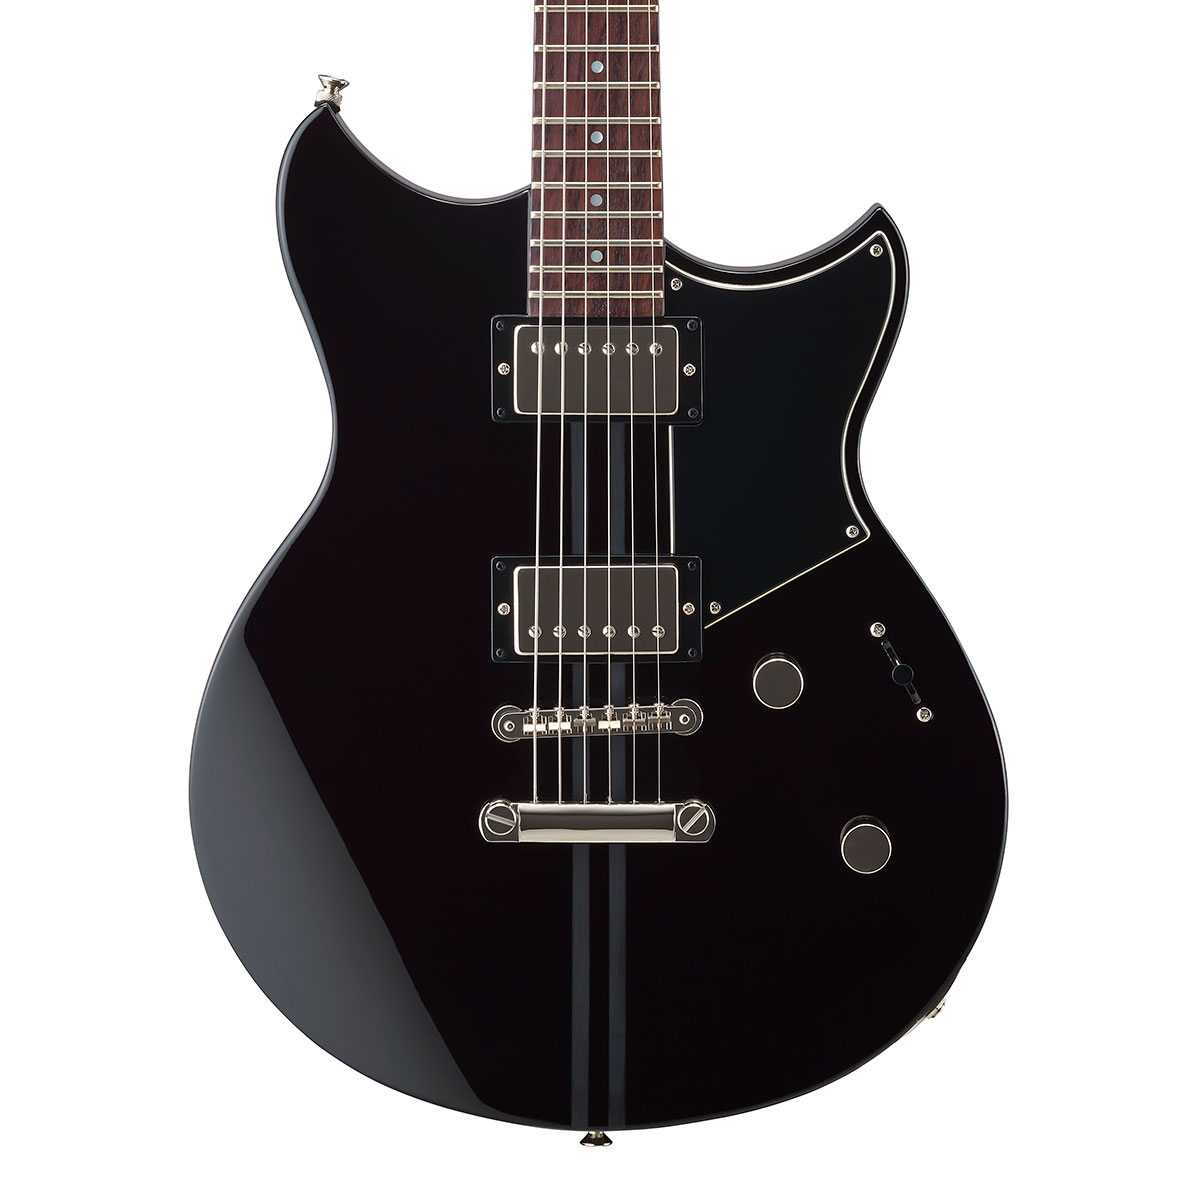 YAMAHA / REVSTAR RSE20 ブラック (BL) ヤマハ エレキギター